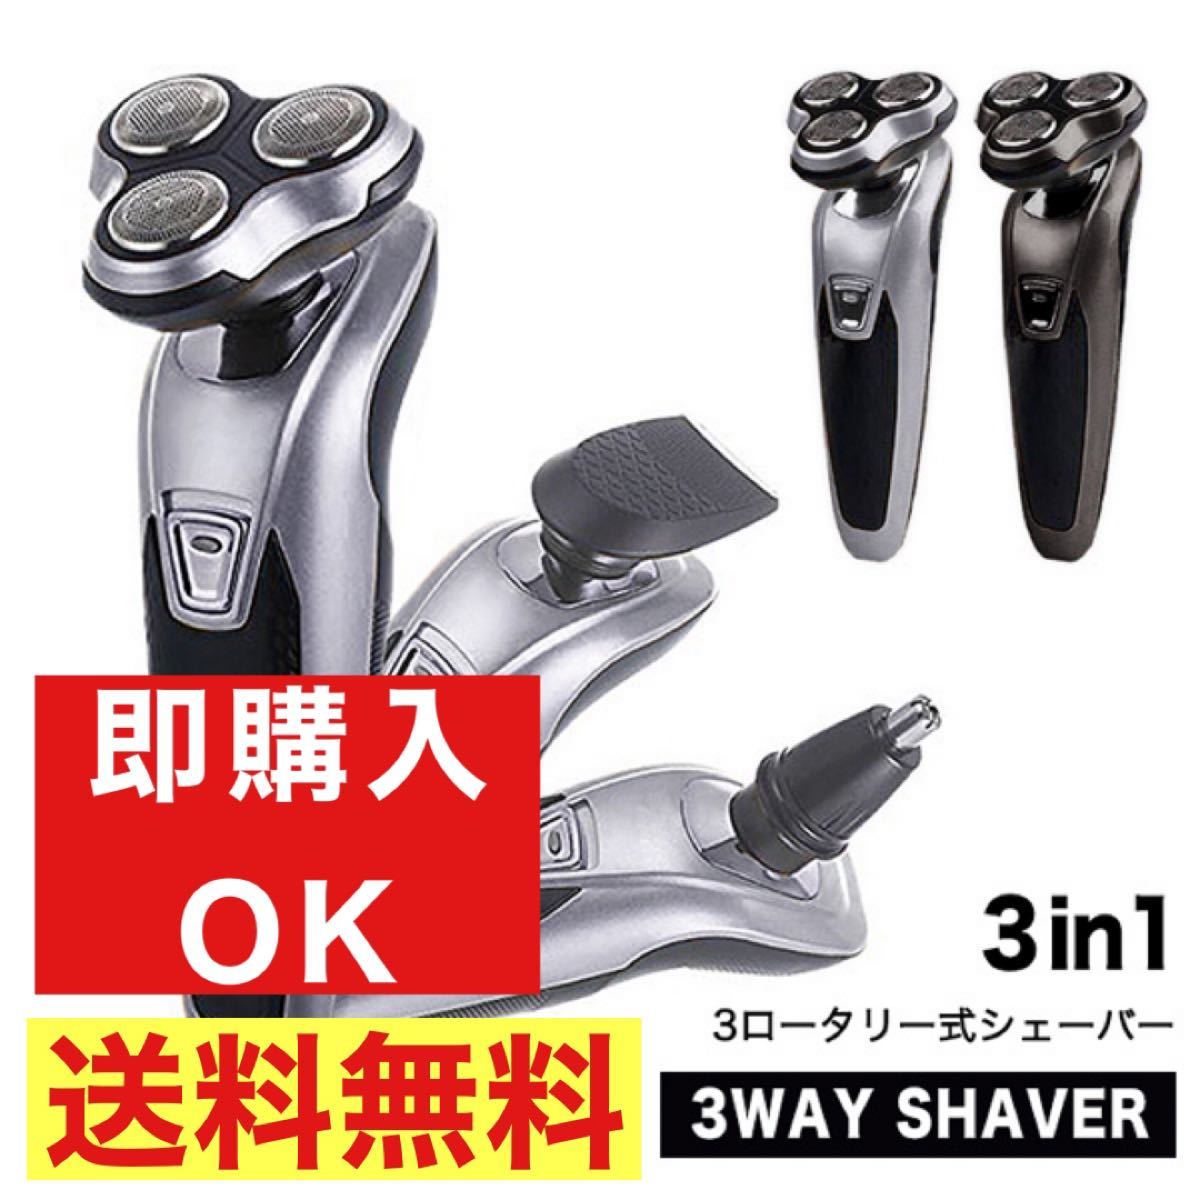 【新品】 シェーバー 電動シェーバー 髭剃り 3wayシェーバー 3ロータリー式 6枚刃 水洗い可能 軽量 効率的 スピーディー 